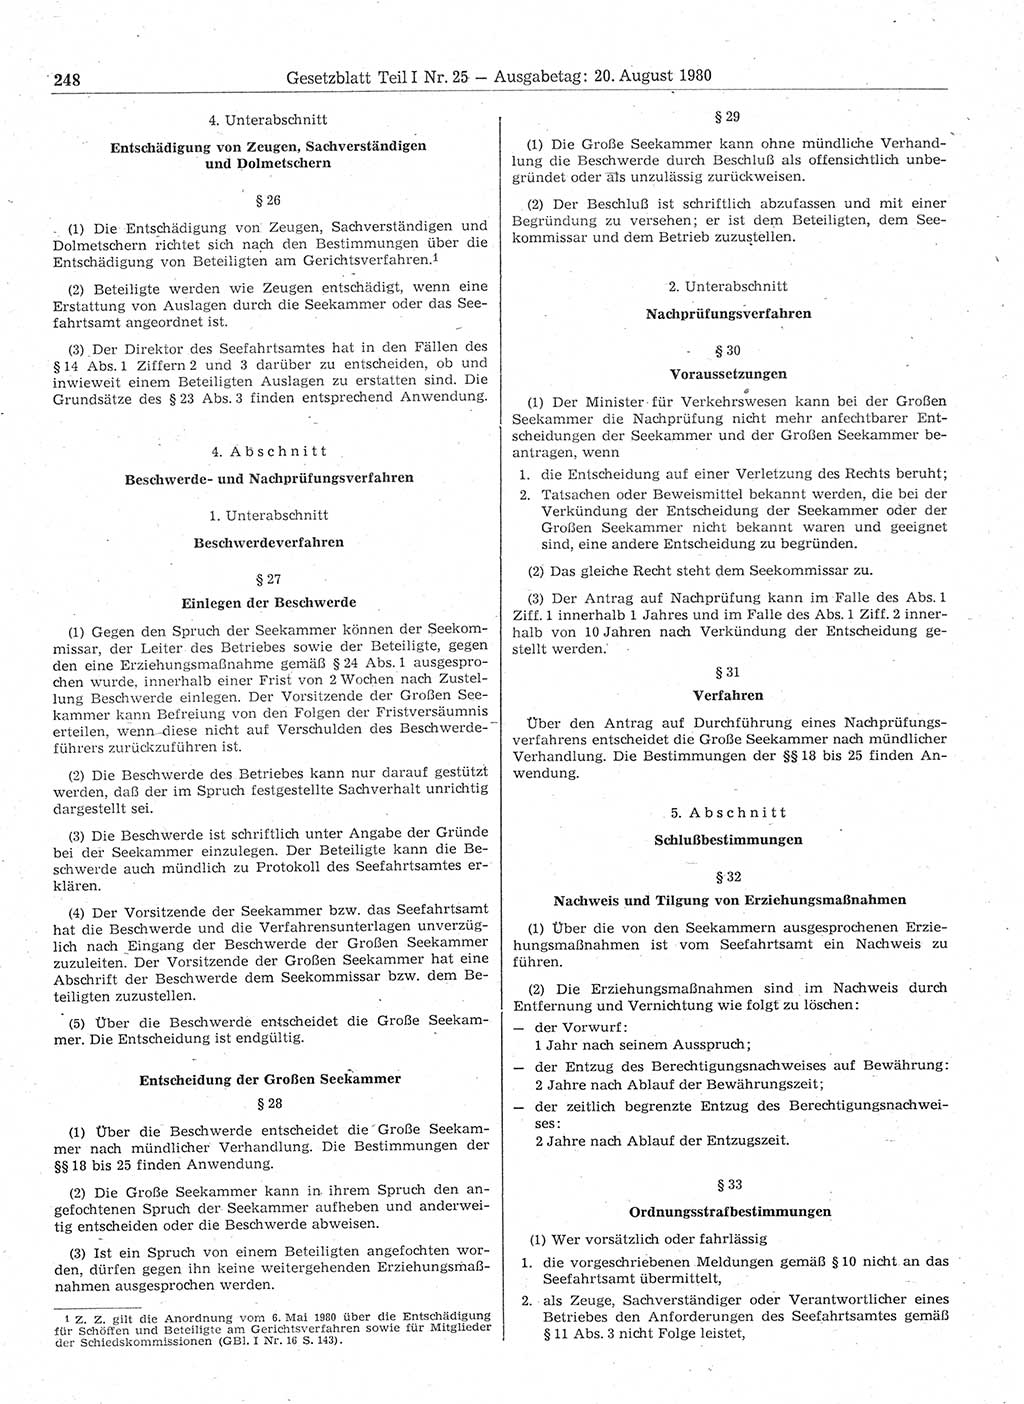 Gesetzblatt (GBl.) der Deutschen Demokratischen Republik (DDR) Teil Ⅰ 1980, Seite 248 (GBl. DDR Ⅰ 1980, S. 248)